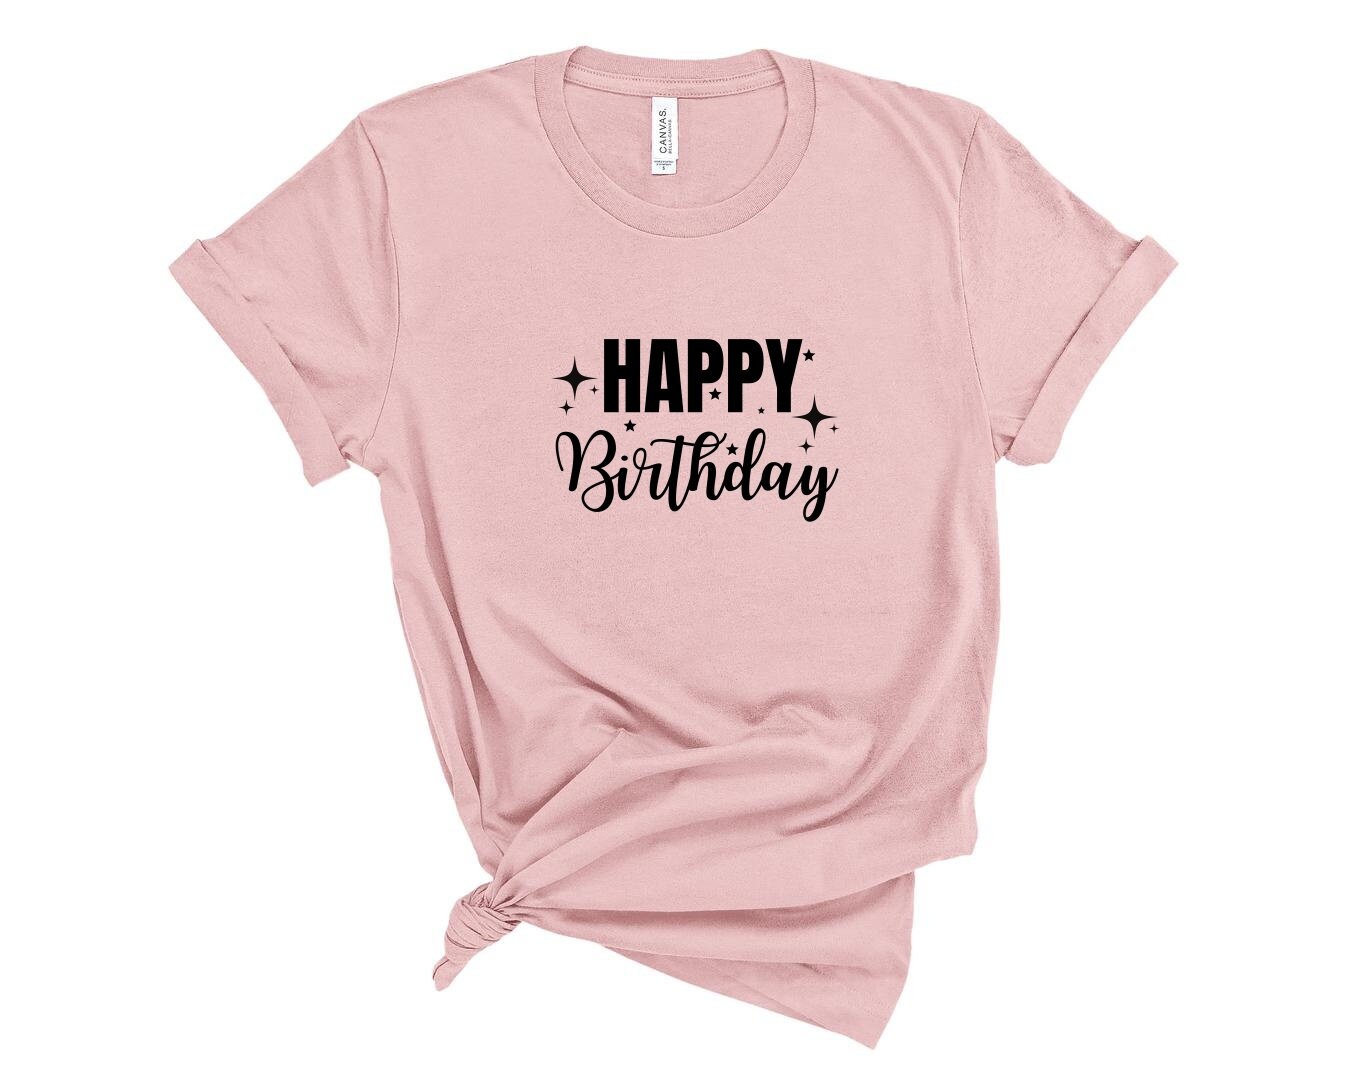 Discover Happy Birthday Shirt, Birthday Gift, Birthday Party T-Shirt